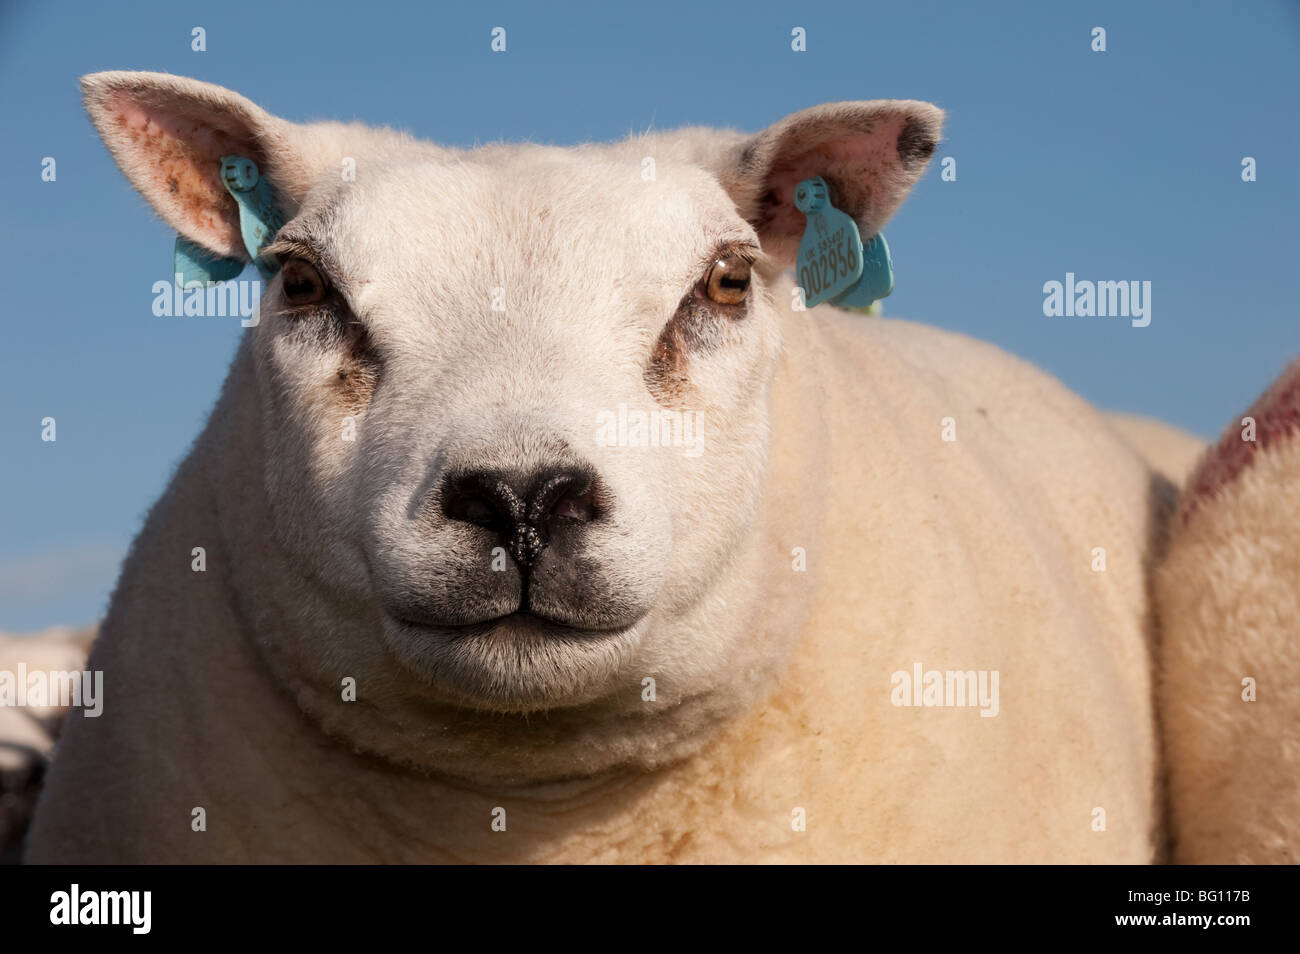 Beltex Schafe in schottischen Landschaft Stockfotografie - Alamy